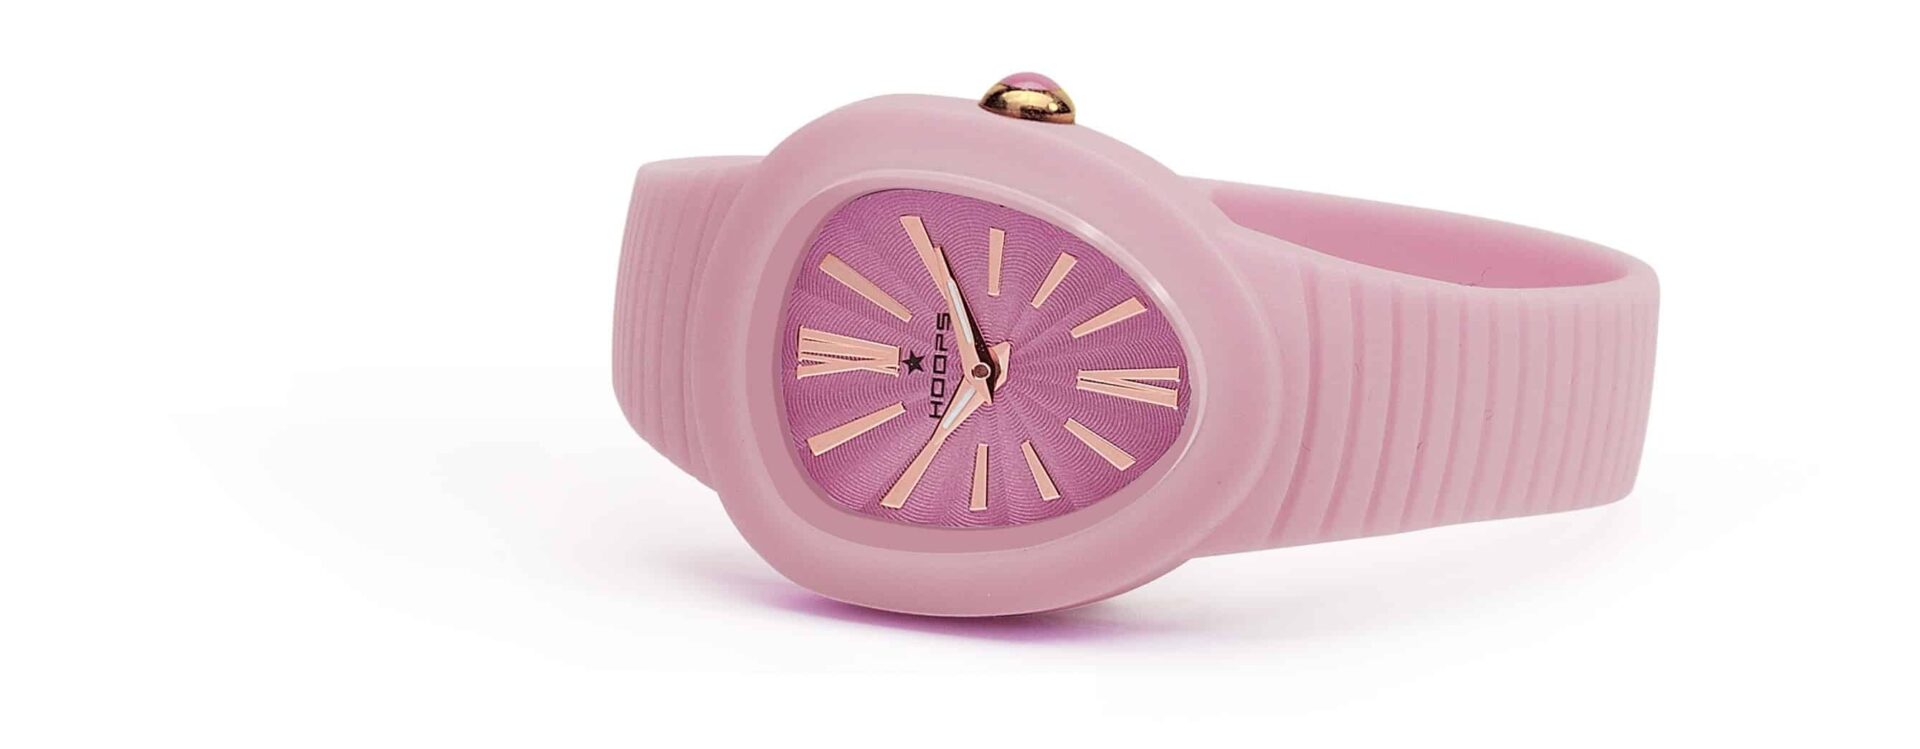 Hoops lancia per l'estate il nuovo orologio “Shape”, tutto candy style